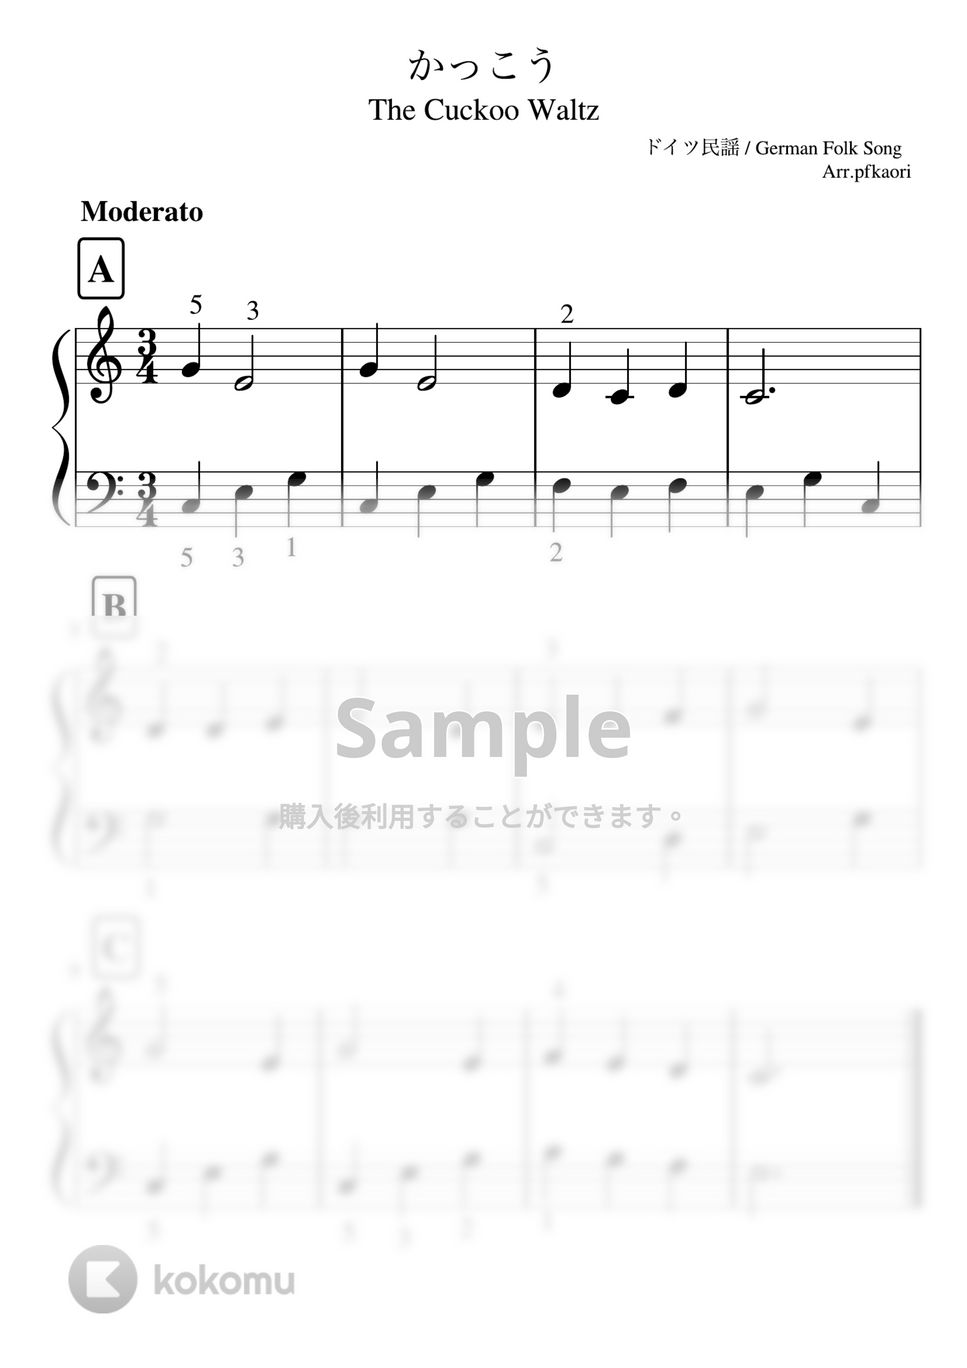 かっこう (ピアノソロ入門〜初級 (指番号付き)) by pfkaori